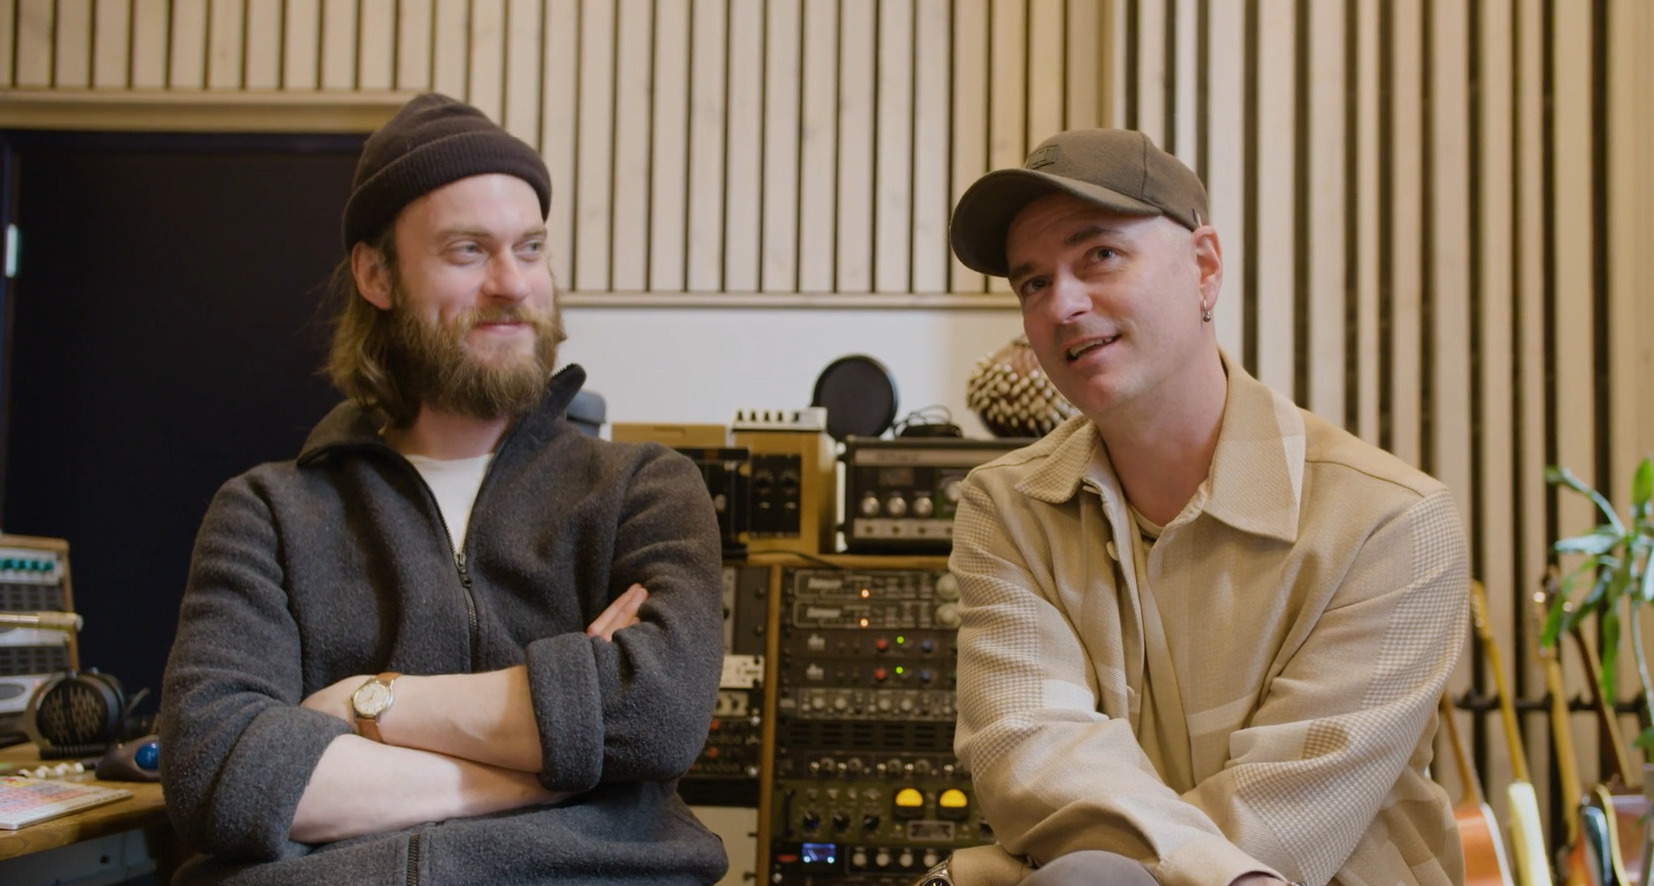 Bilde av Janove Ottesen fra Kaizers og Arthur i studio ifm innspilling av låt til Klar for Sjøen-kampanje.